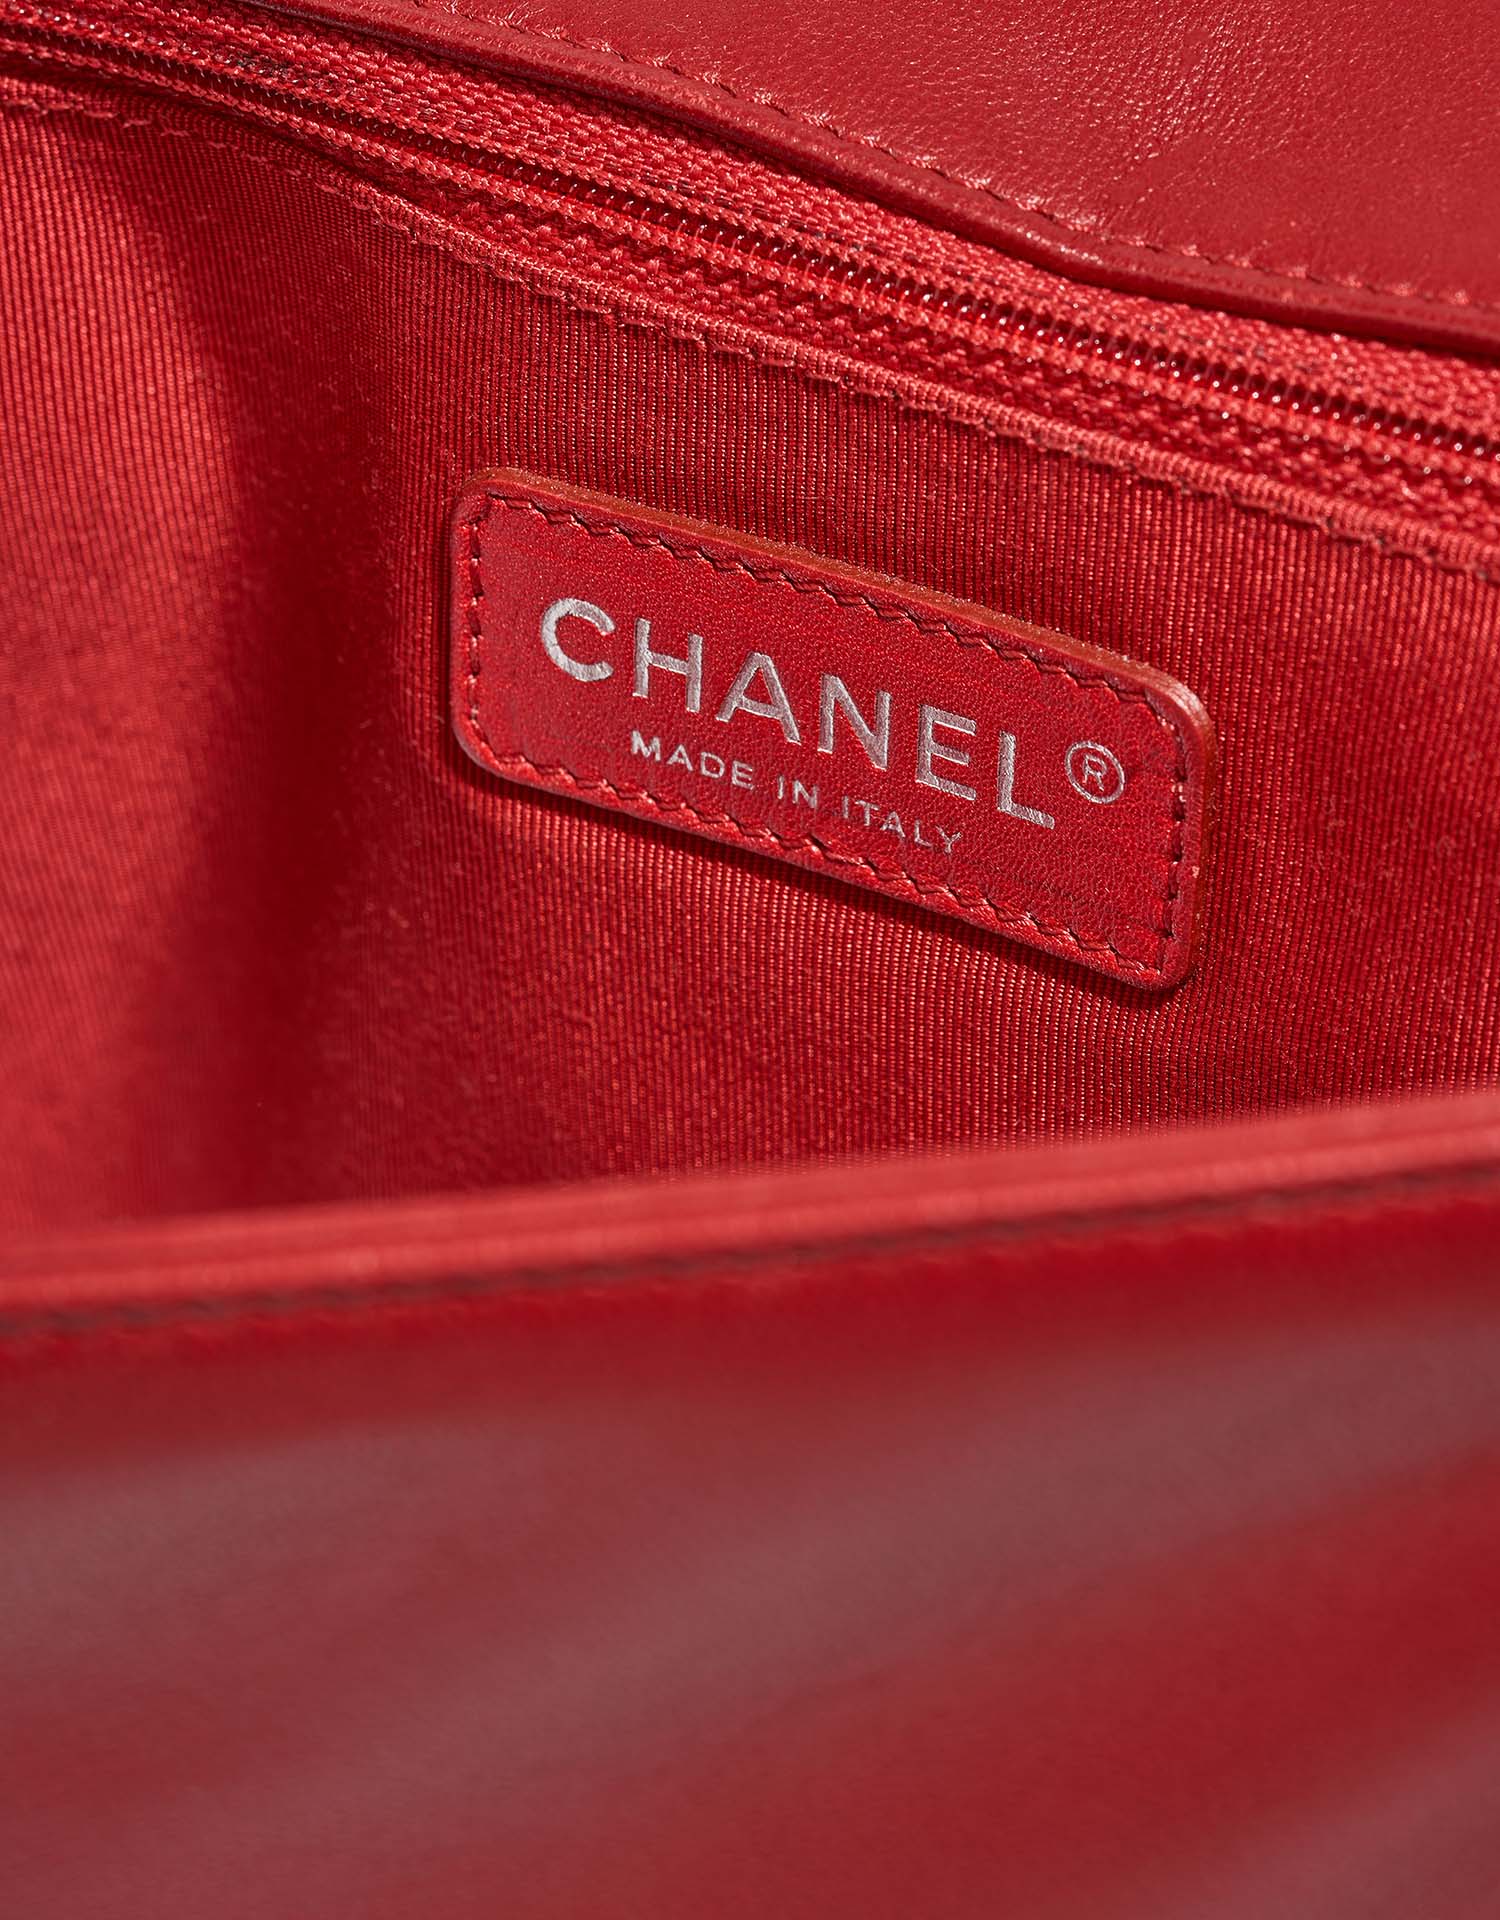 Chanel Boy Large Schwarz-Rot Logo | Verkaufen Sie Ihre Designer-Tasche auf Saclab.com